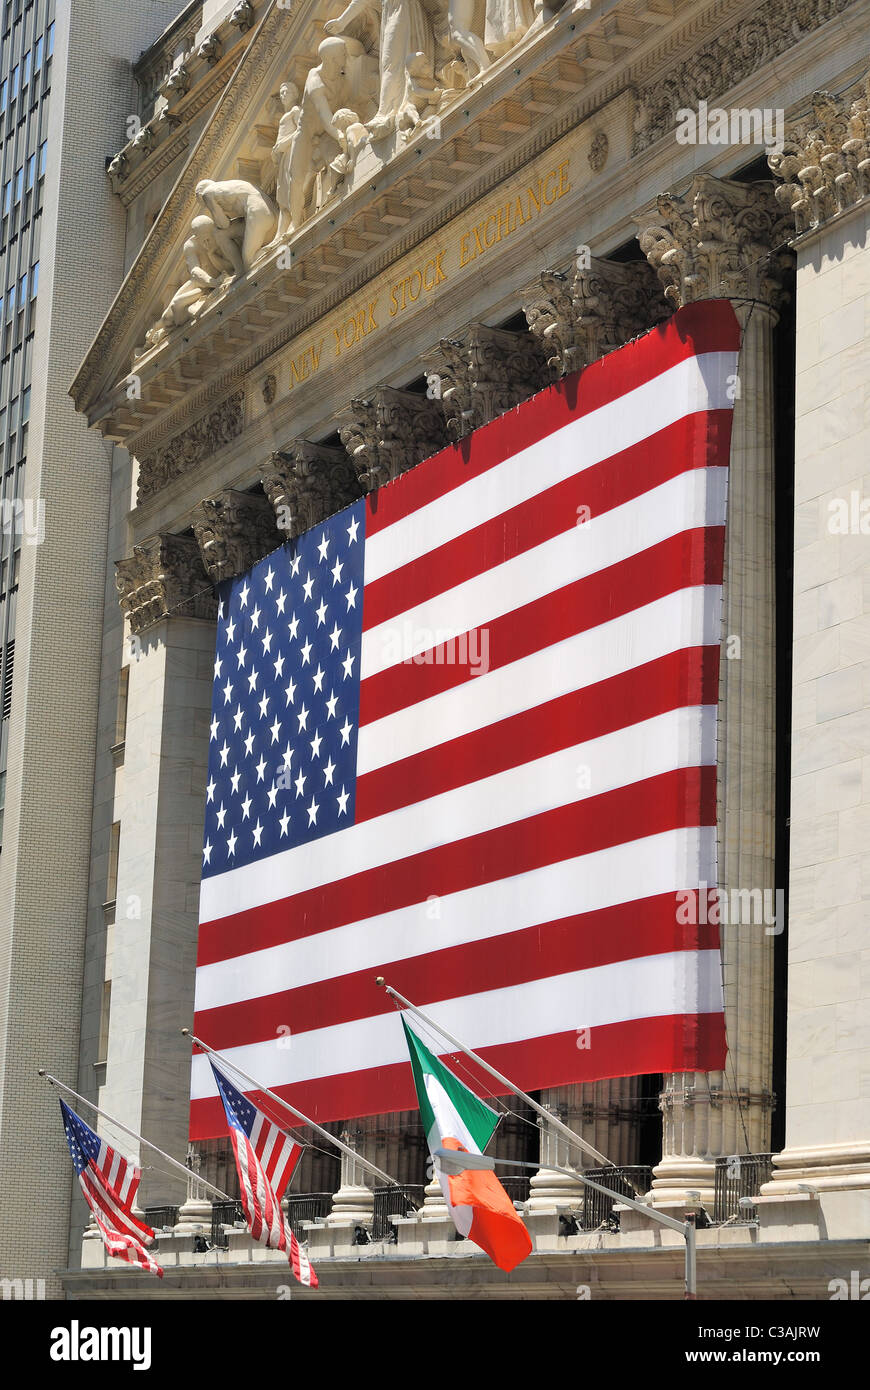 Le quartier historique de Wall Street à New York Ville de New York et le New York Stock Exchange. Le 12 juillet 2010. Banque D'Images